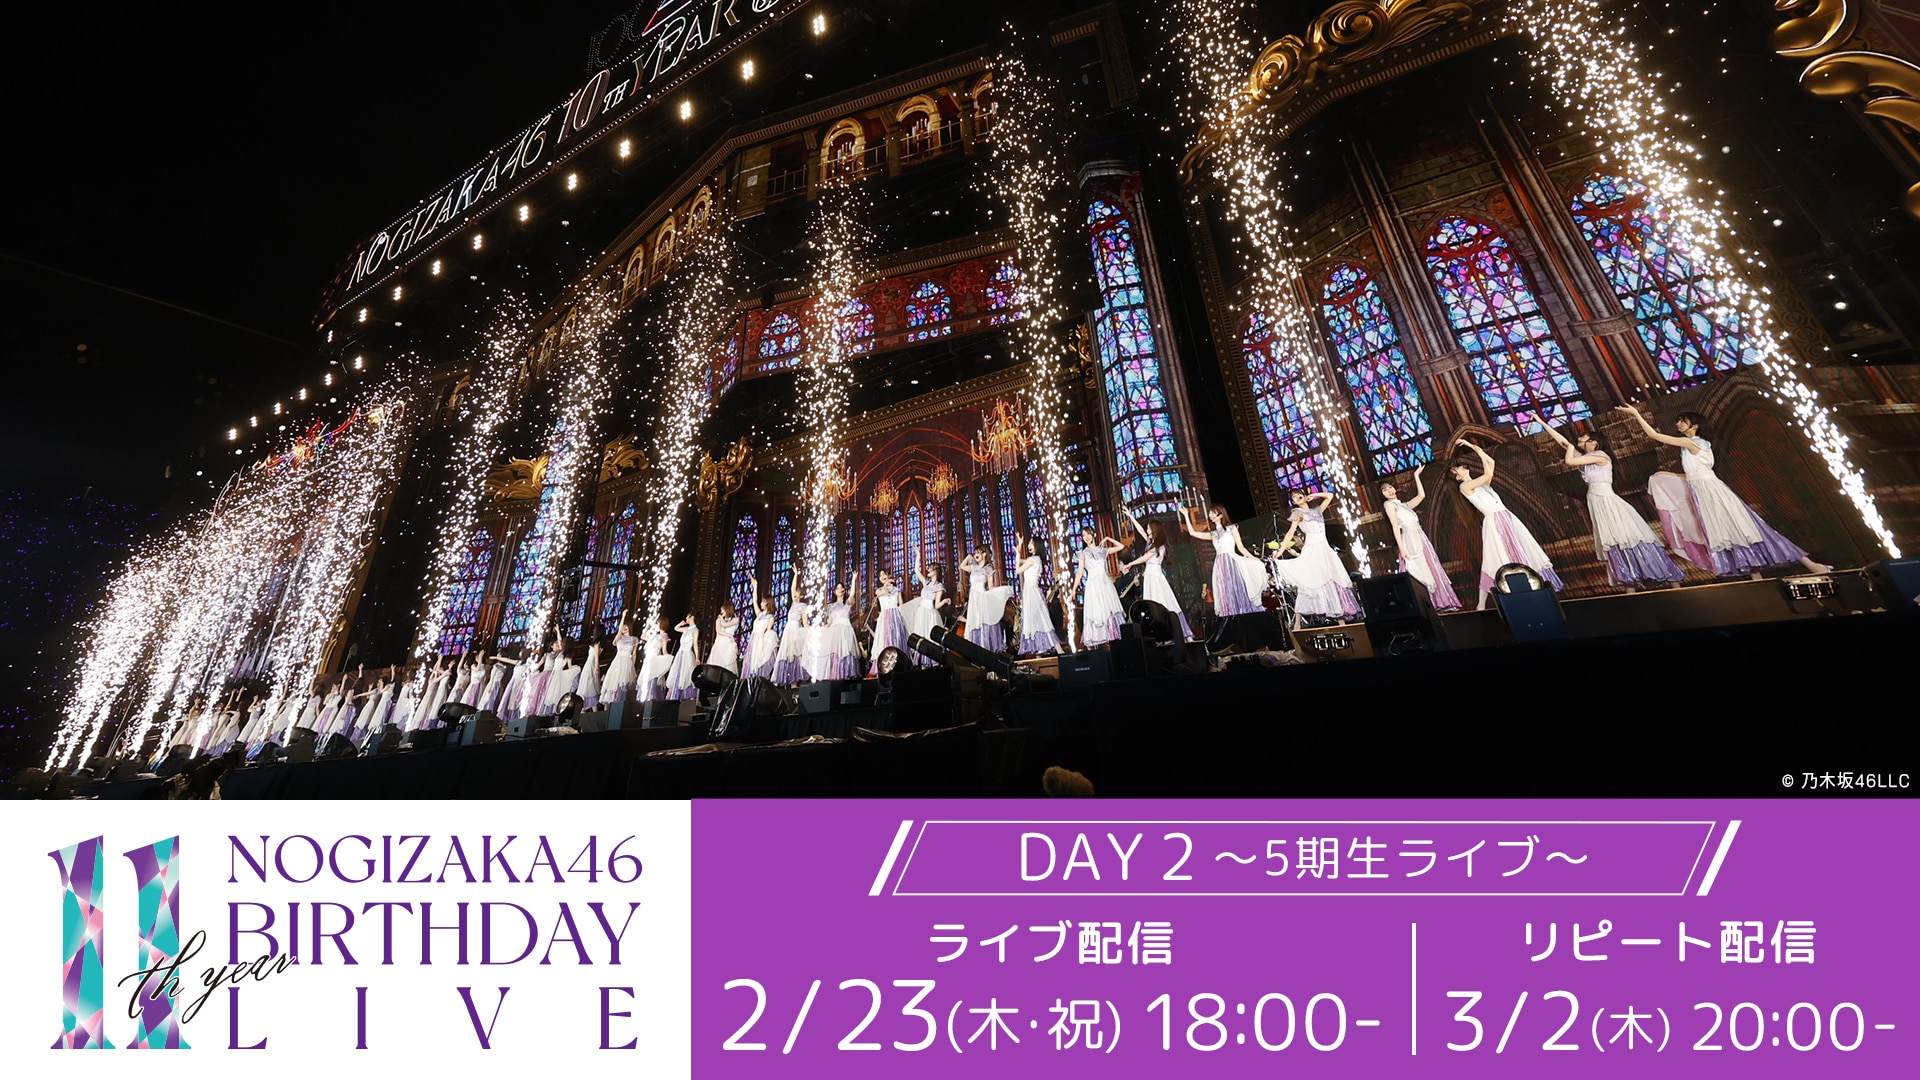 乃木坂46 11th YEAR BIRTHDAY LIVE DAY 2 ～5期生ライブ～ | ライブ